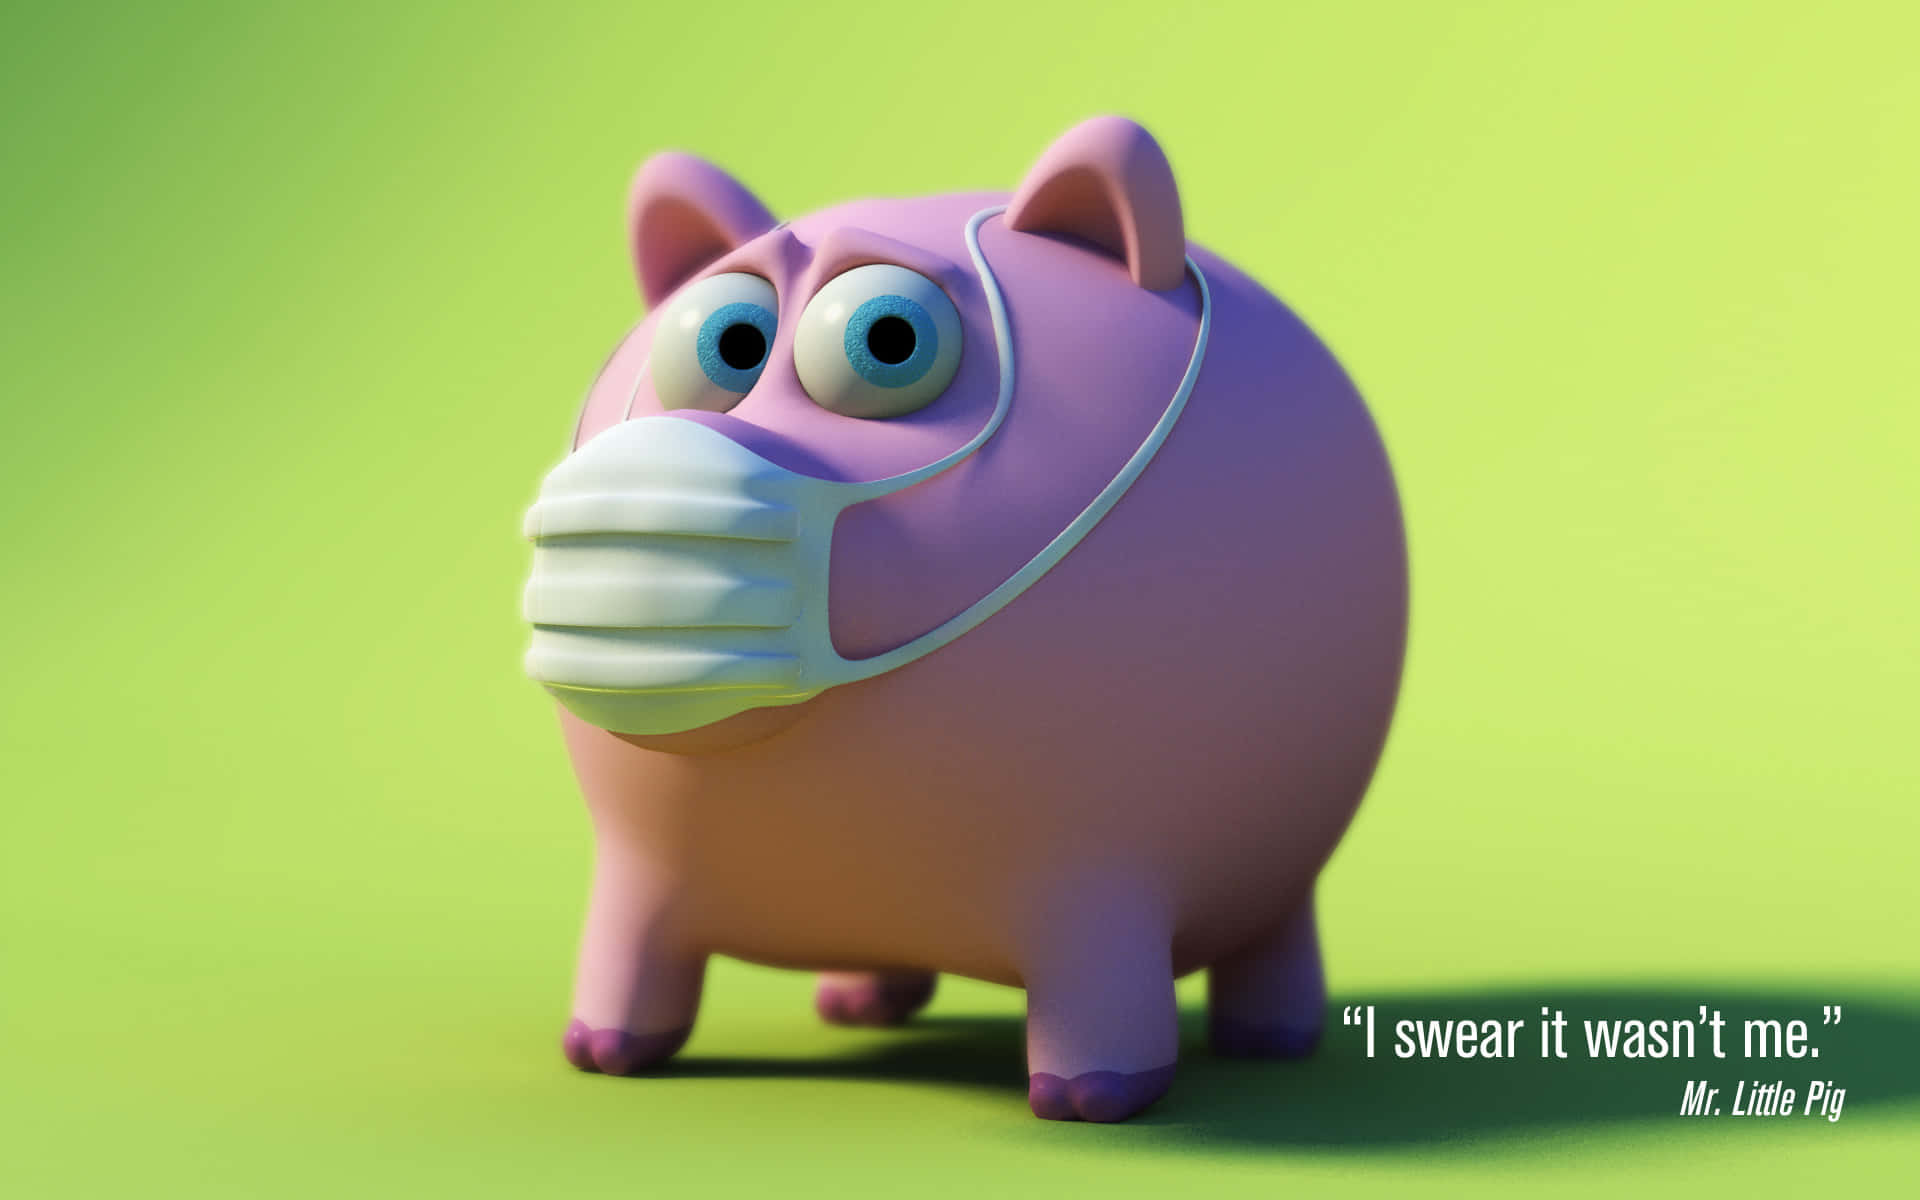 Funny Mr. Little Pig Background